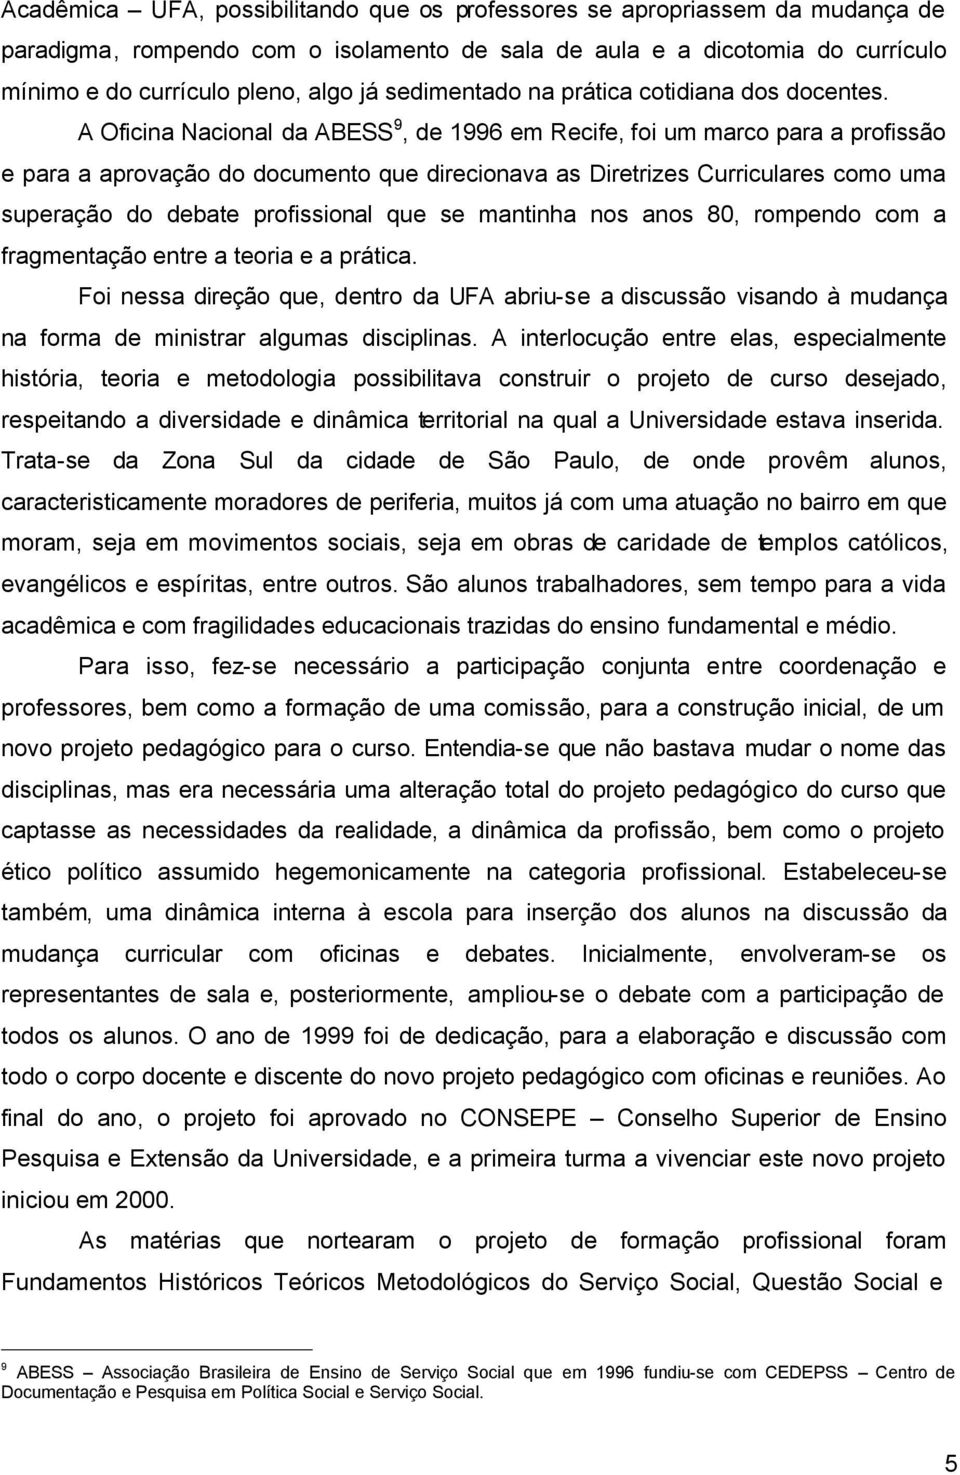 A Oficina Nacional da ABESS 9, de 1996 em Recife, foi um marco para a profissão e para a aprovação do documento que direcionava as Diretrizes Curriculares como uma superação do debate profissional